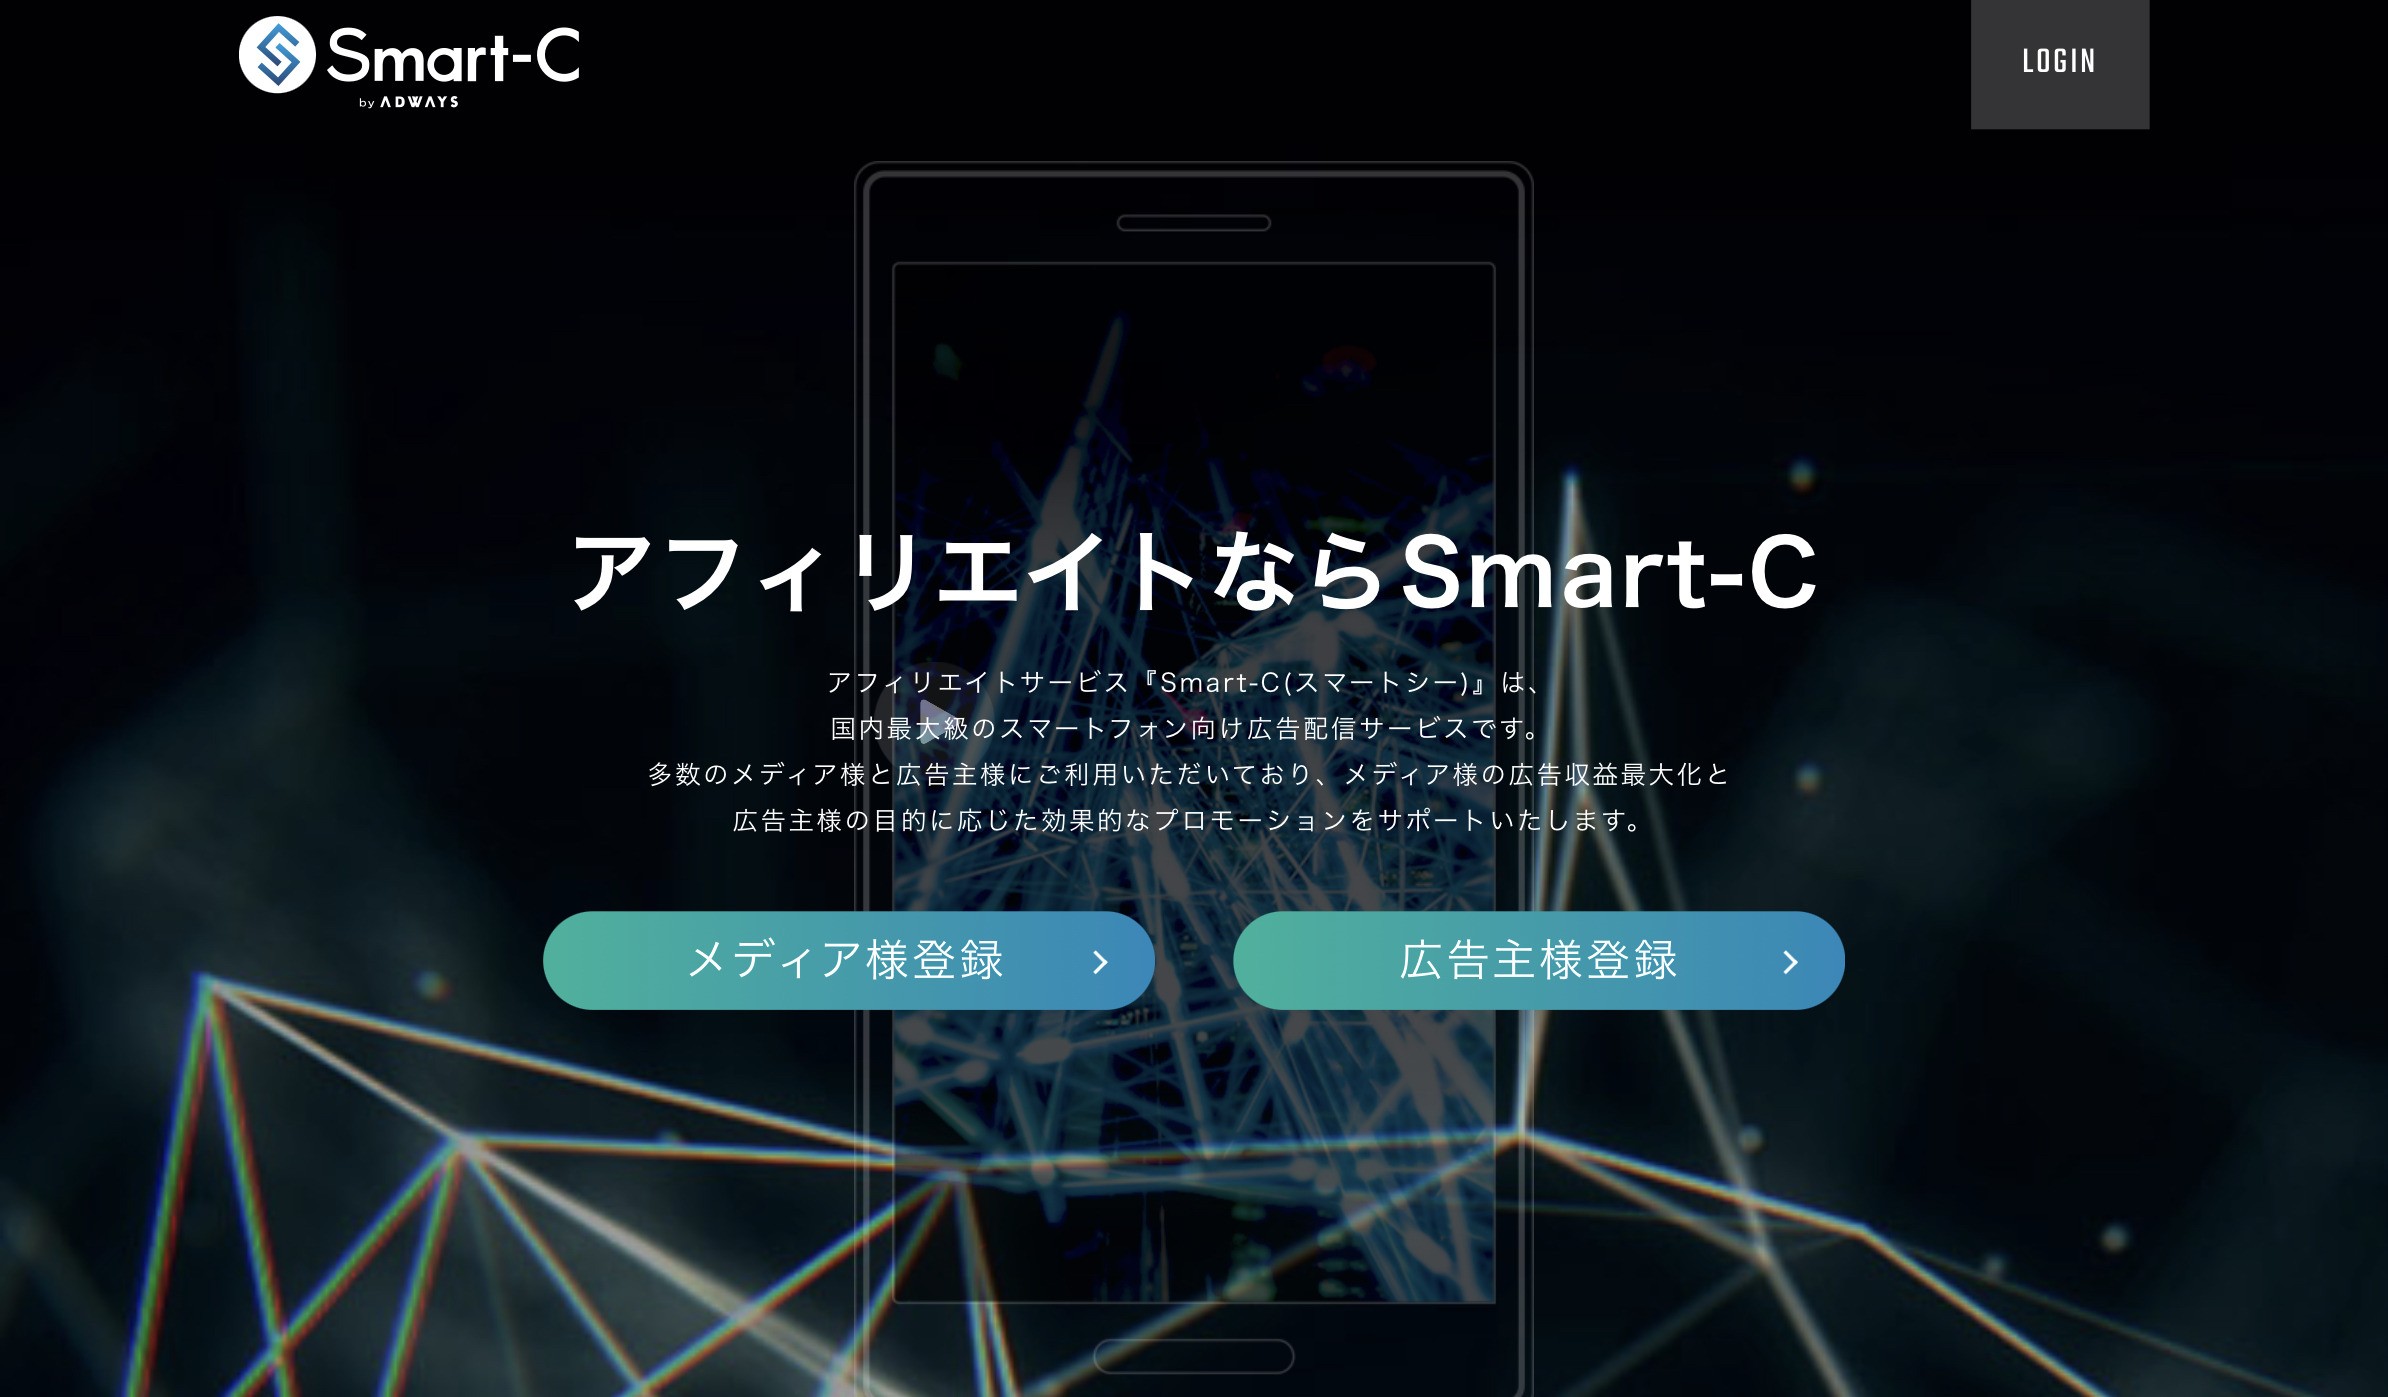 ③：Smart-C